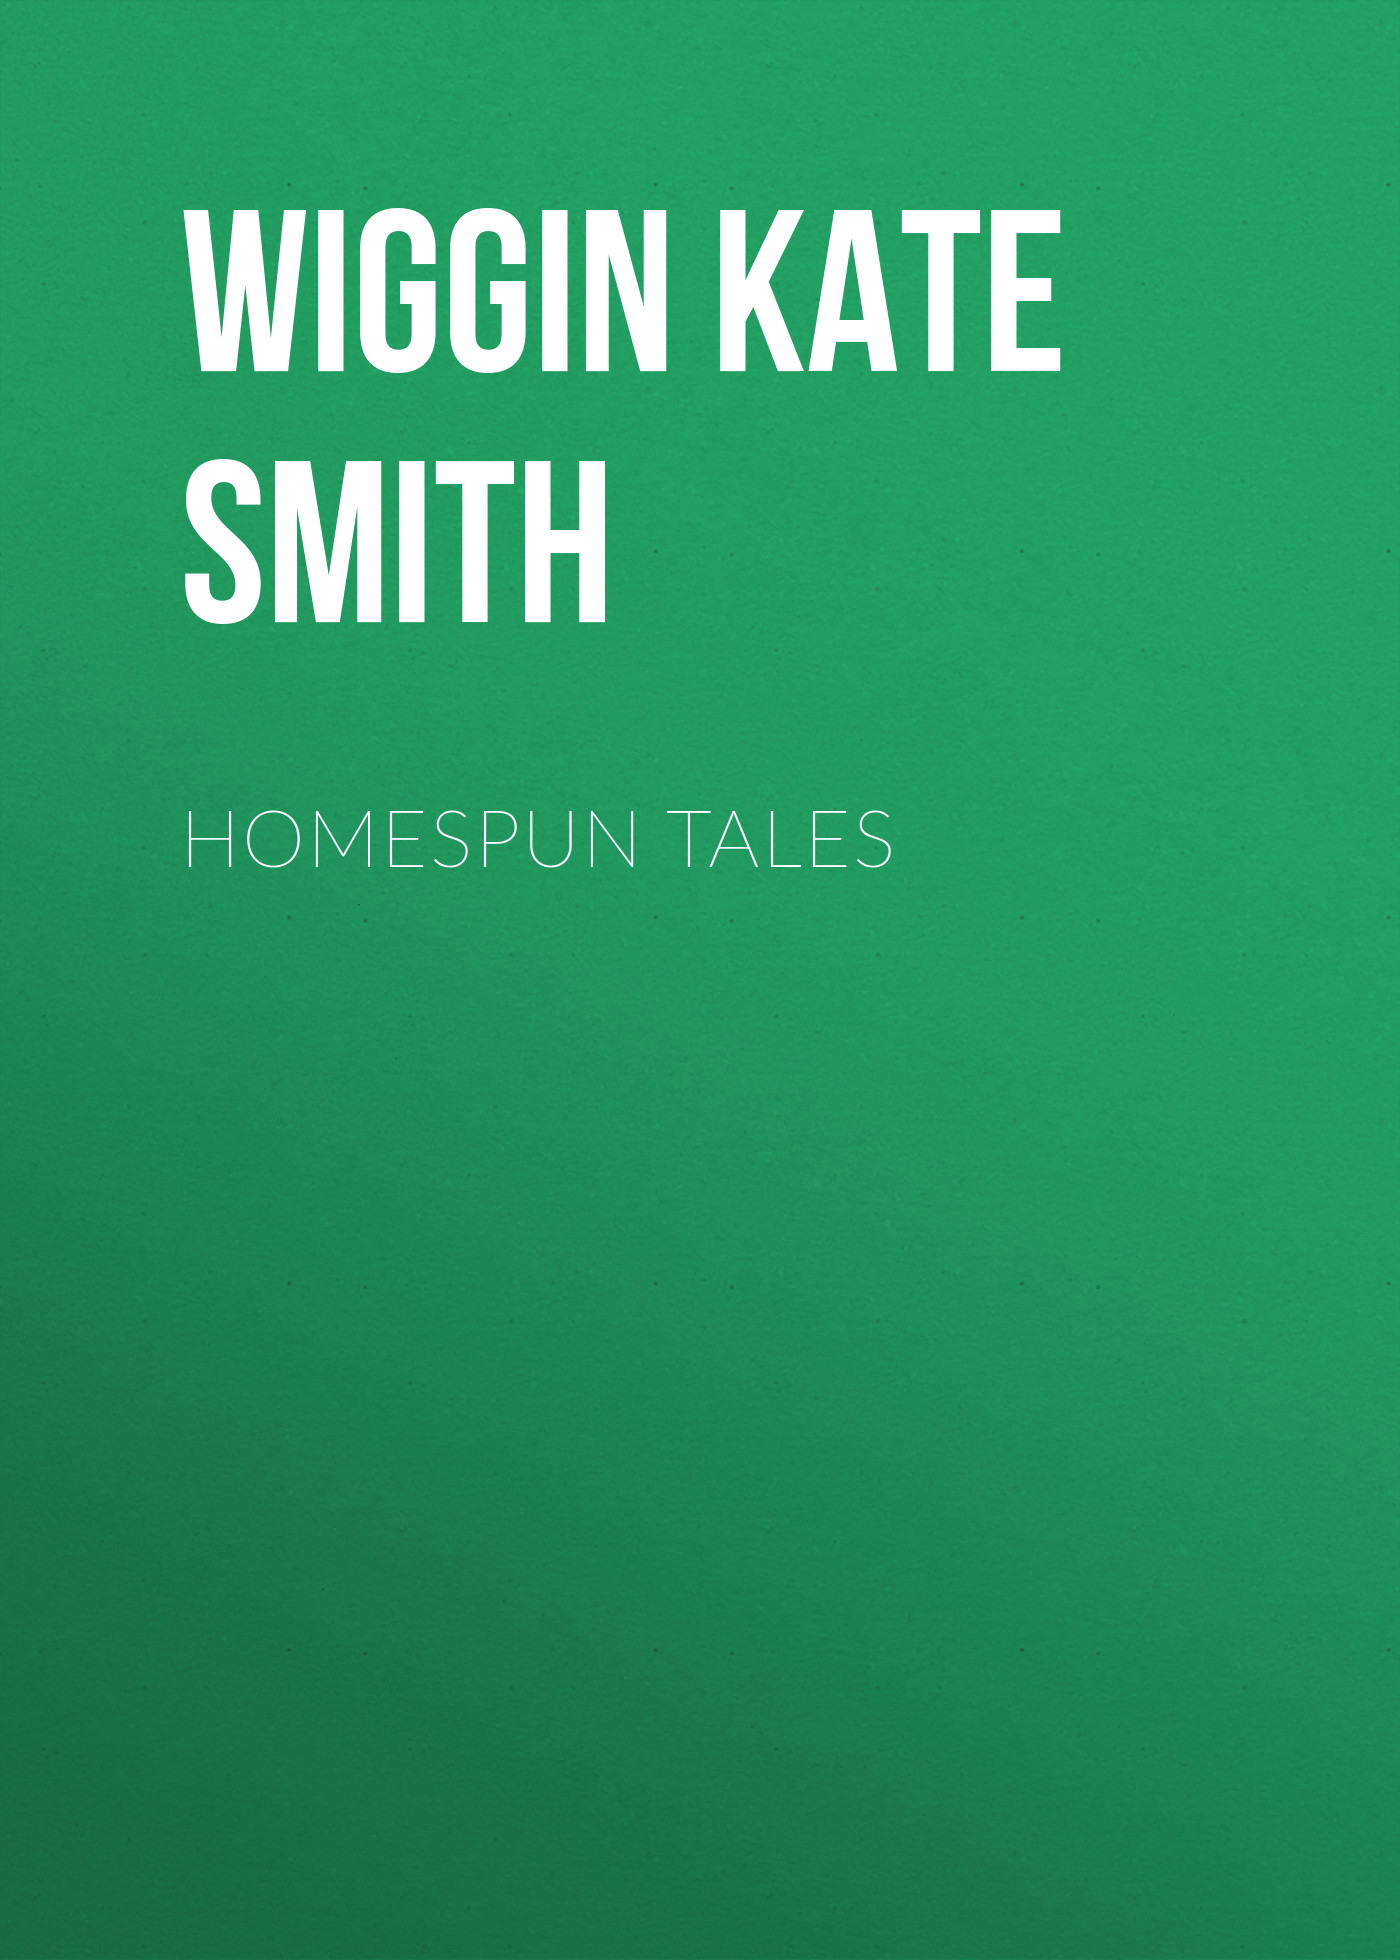 Книга Homespun Tales из серии , созданная Kate Wiggin, может относится к жанру Зарубежная классика, Зарубежная старинная литература. Стоимость электронной книги Homespun Tales с идентификатором 36323708 составляет 0 руб.